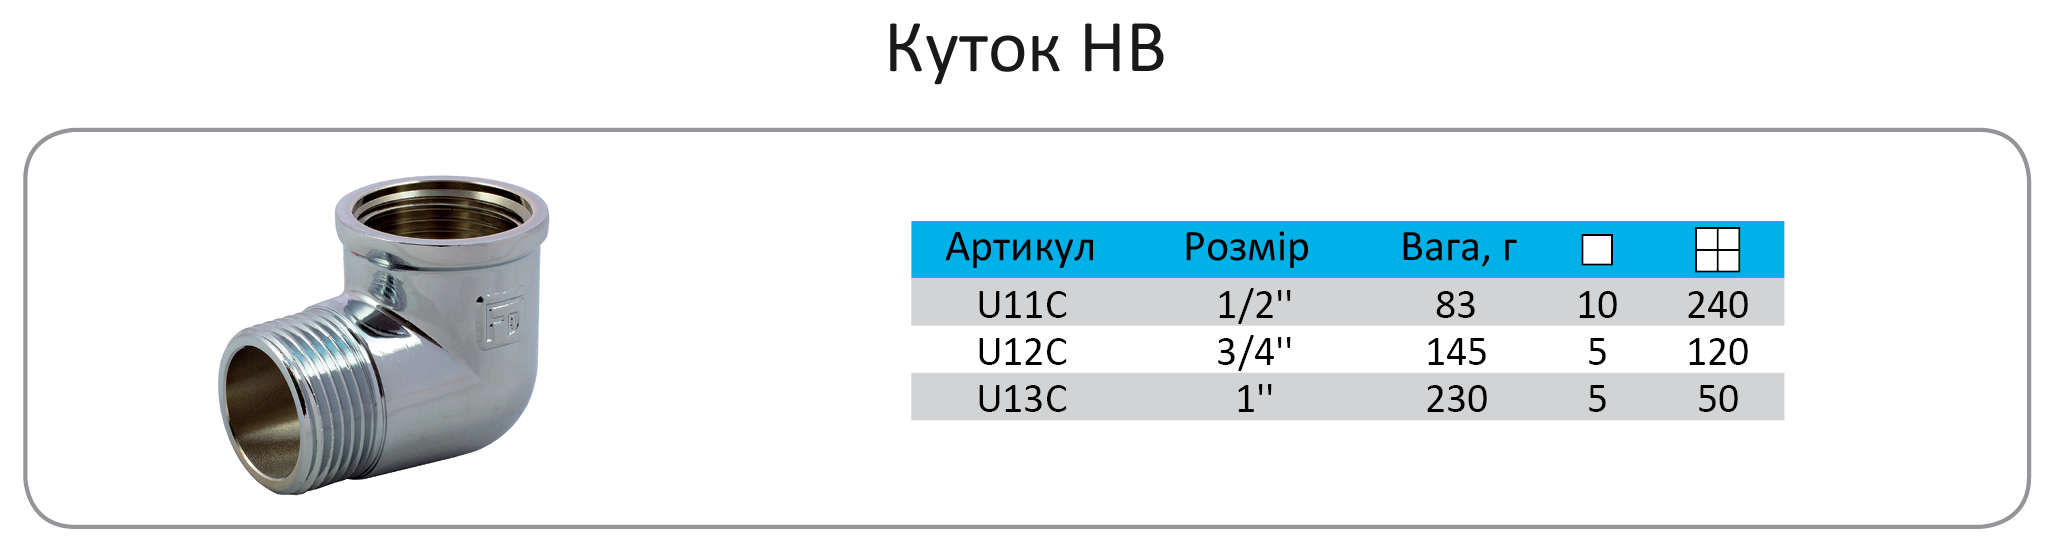 27 U11C-укр